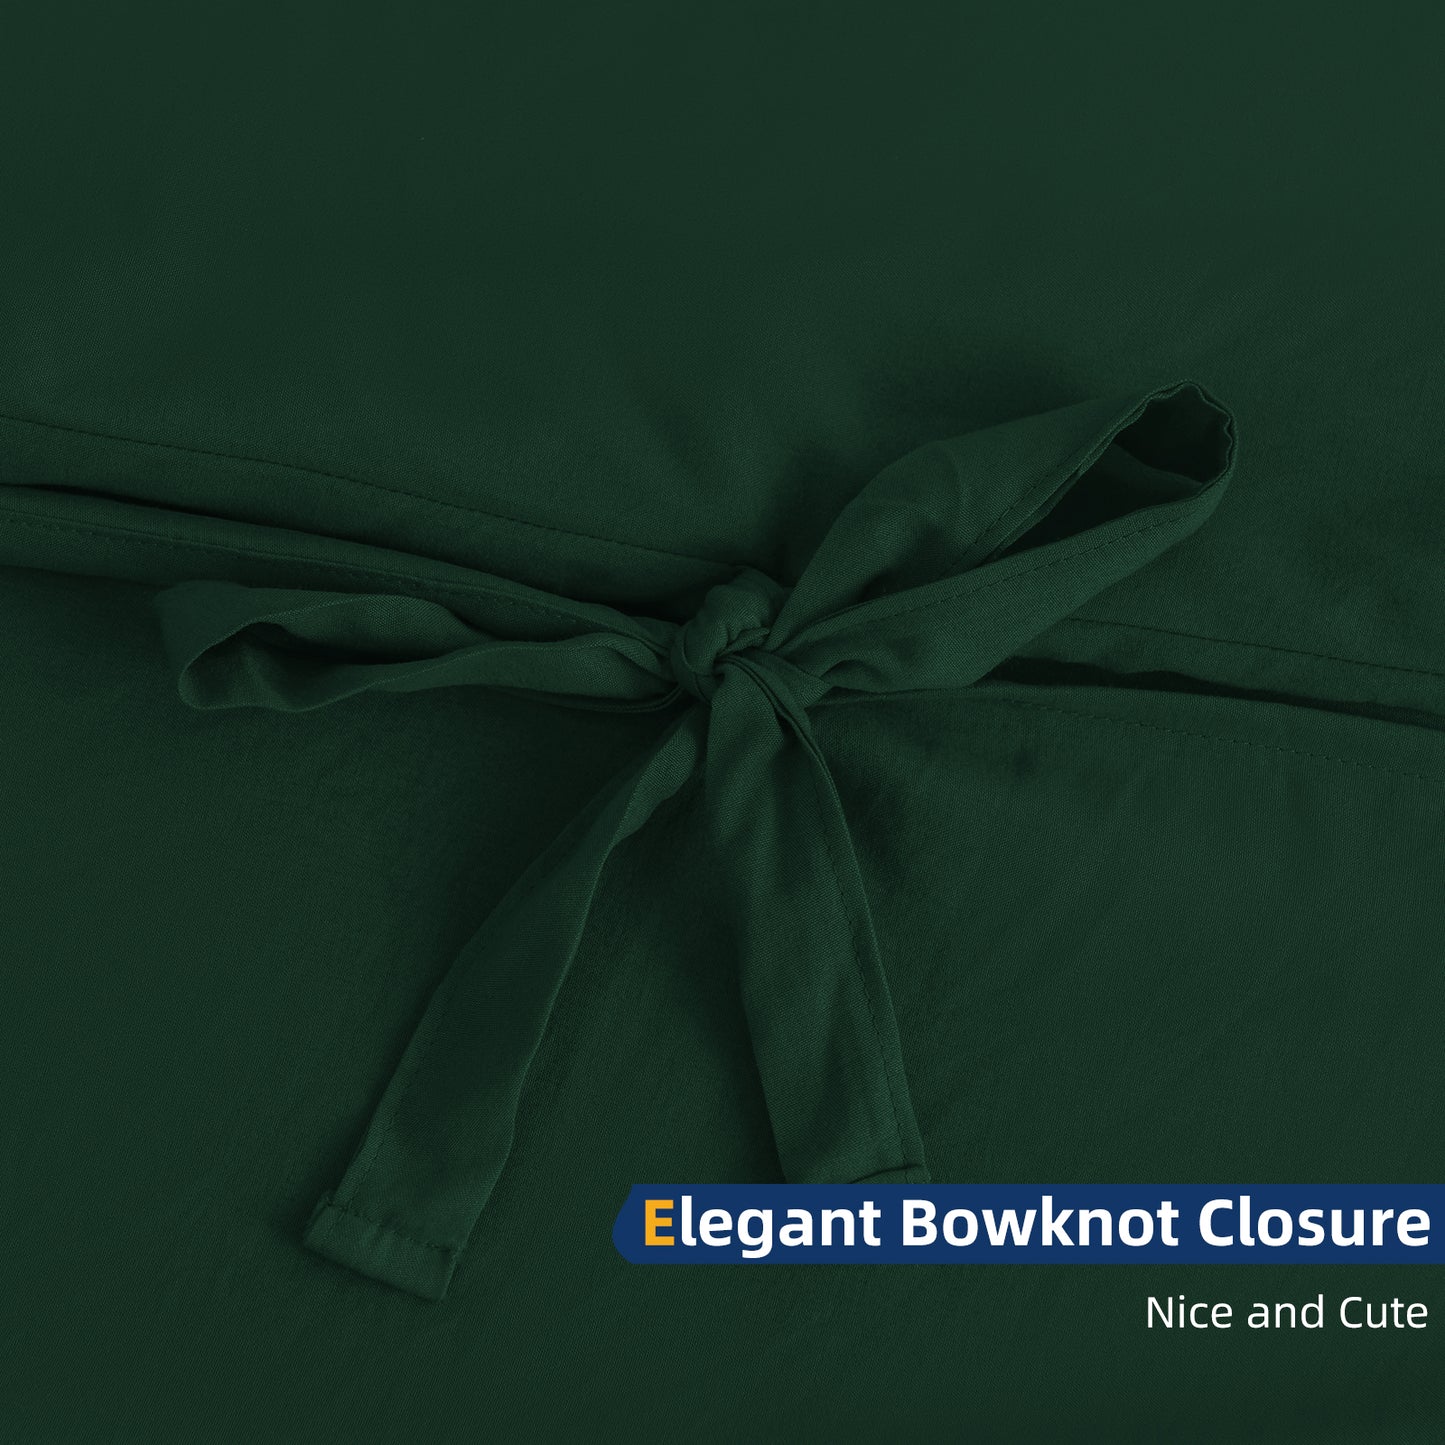 Argstar Bowknot Closure Duvet Cover Set Dark Green Color